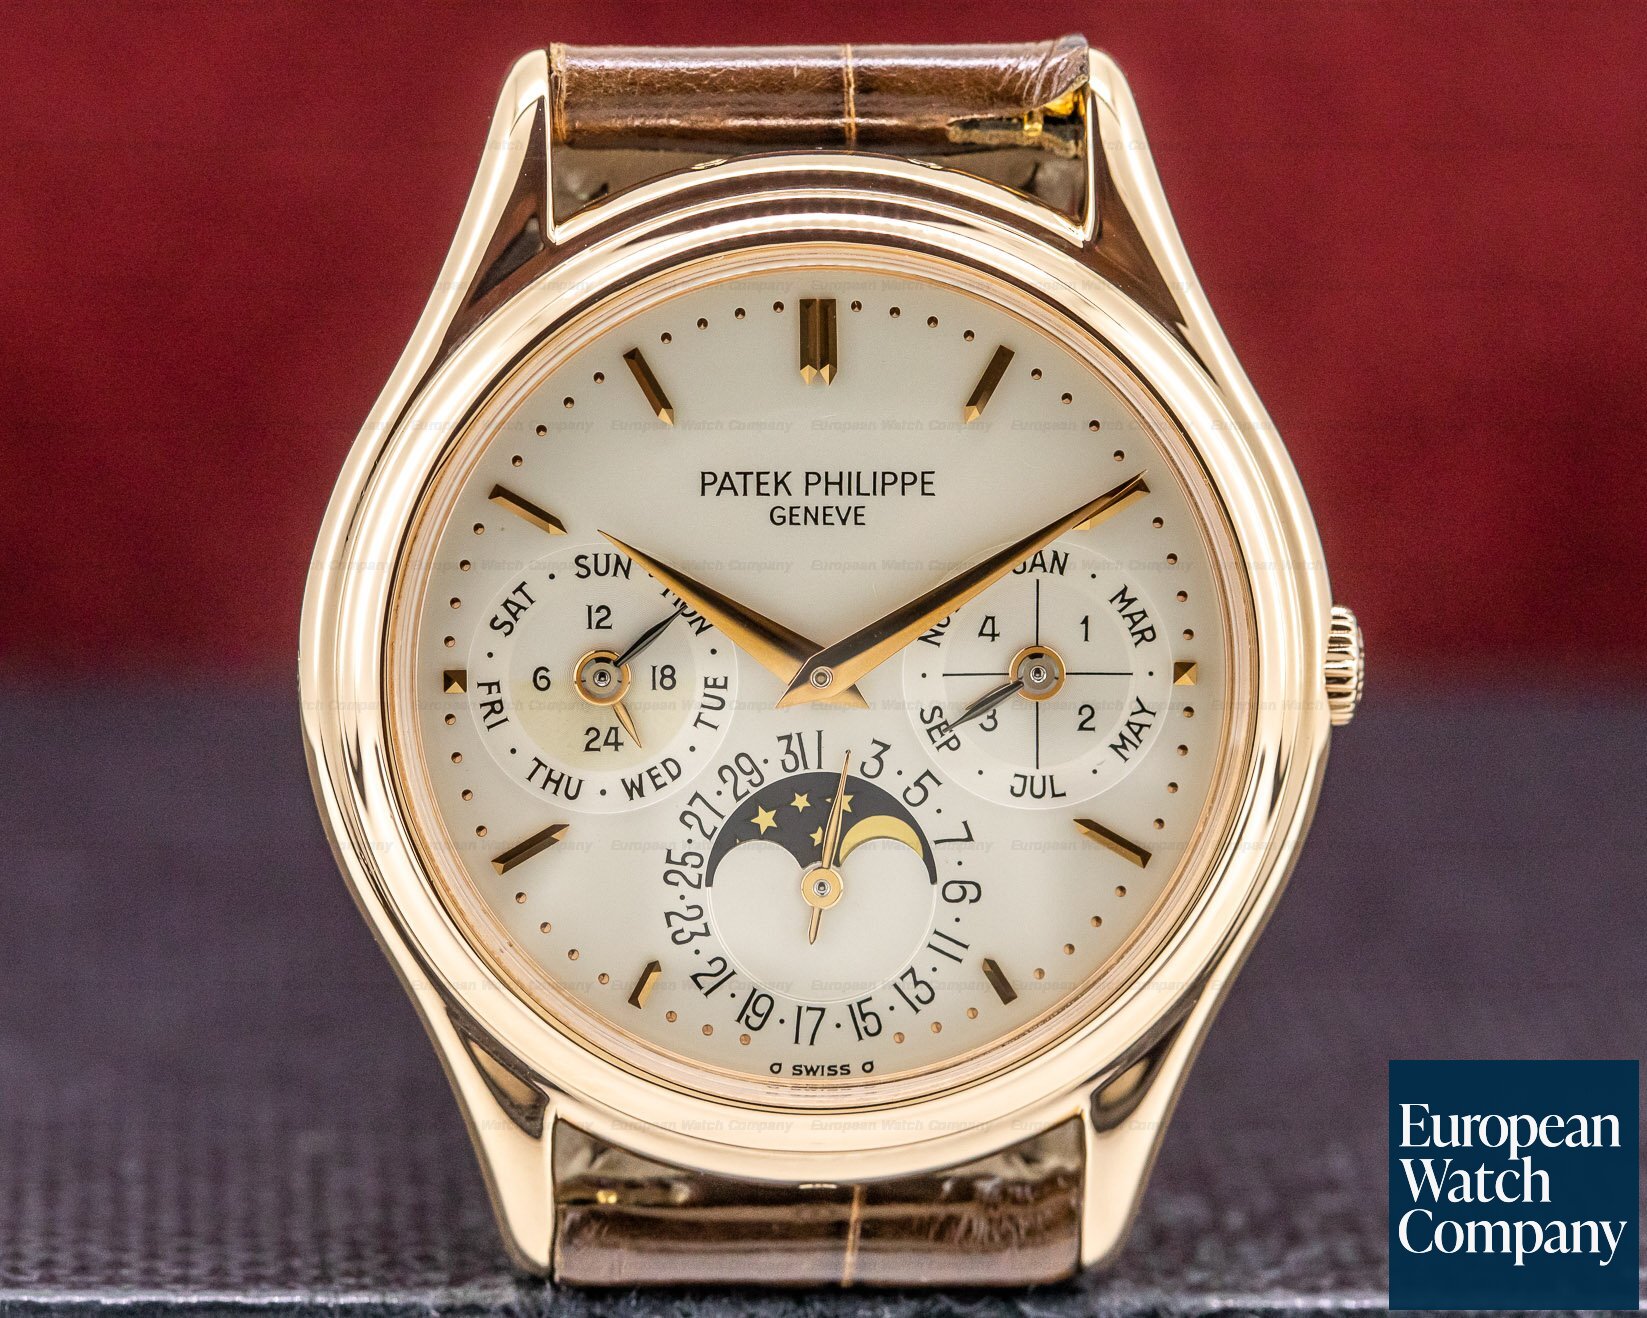 Patek Philippe Perpetual Calendar Rose Gold Silver Dial / Deployant Ref. 3940R